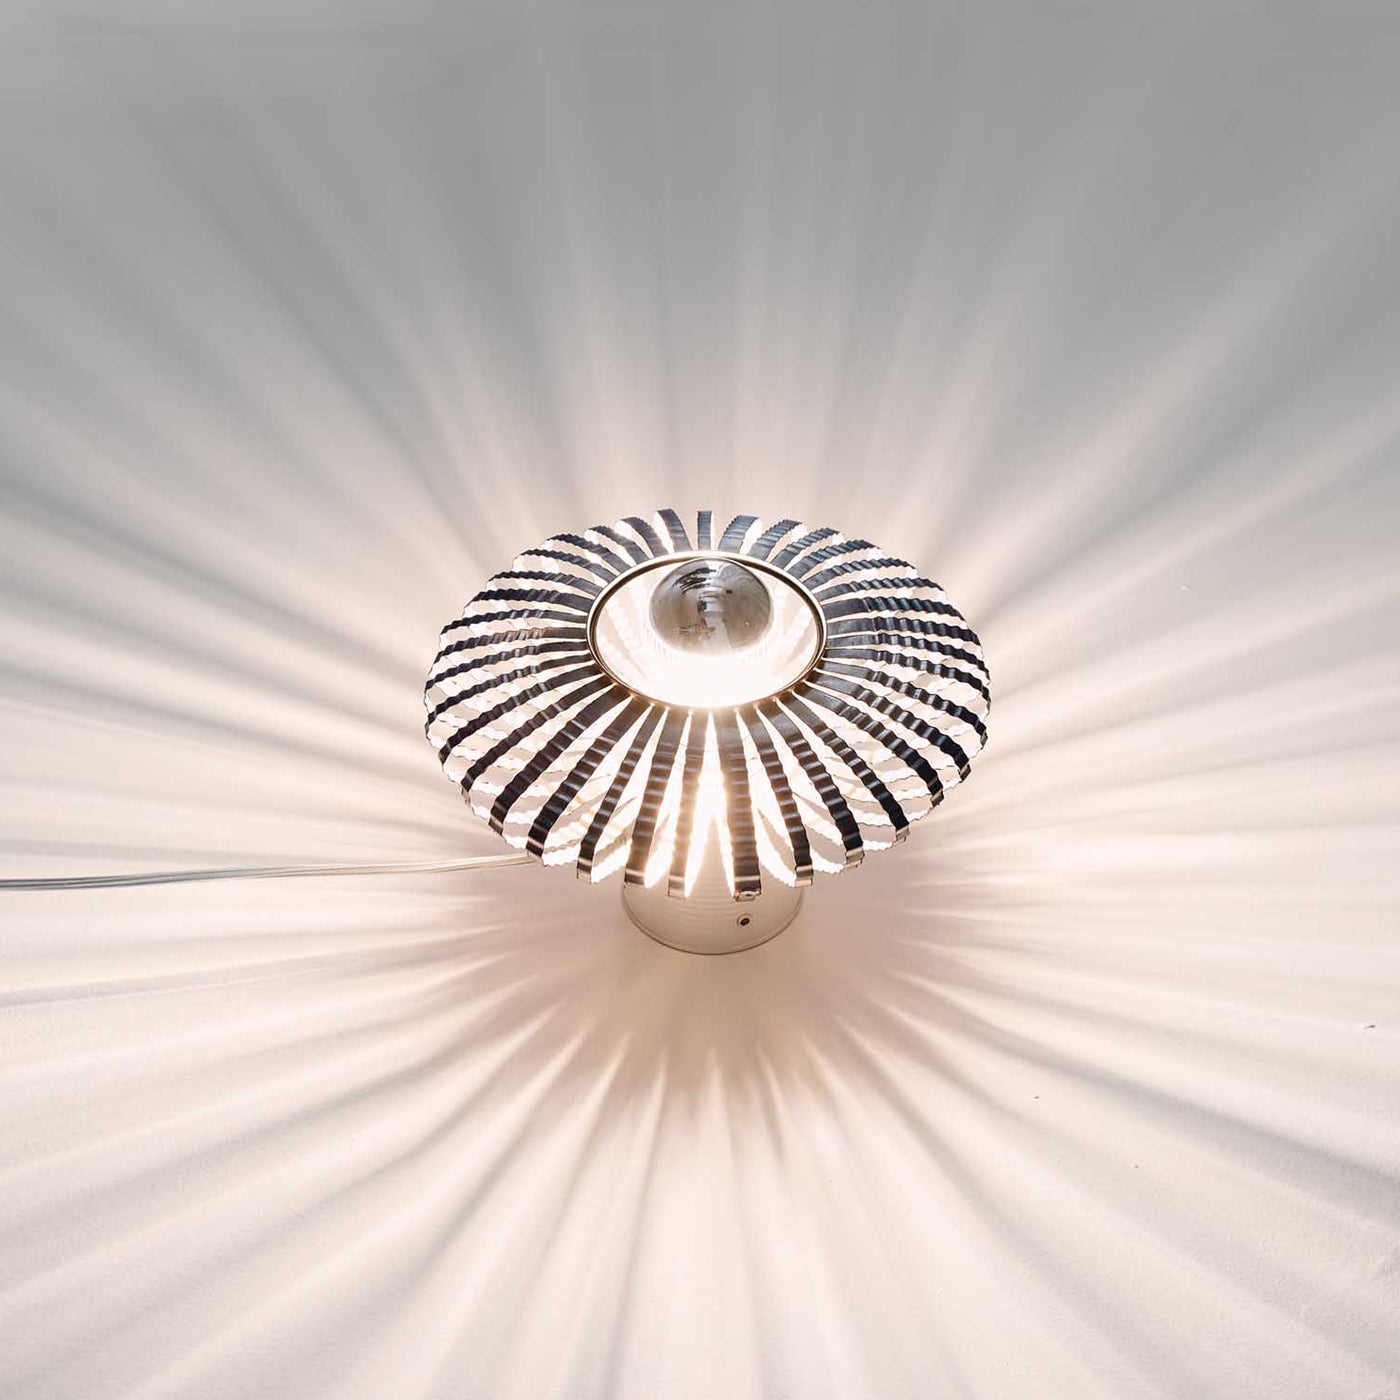 Celeste Table Lamp by Nadja Galli Zugaro - Alternative view 1